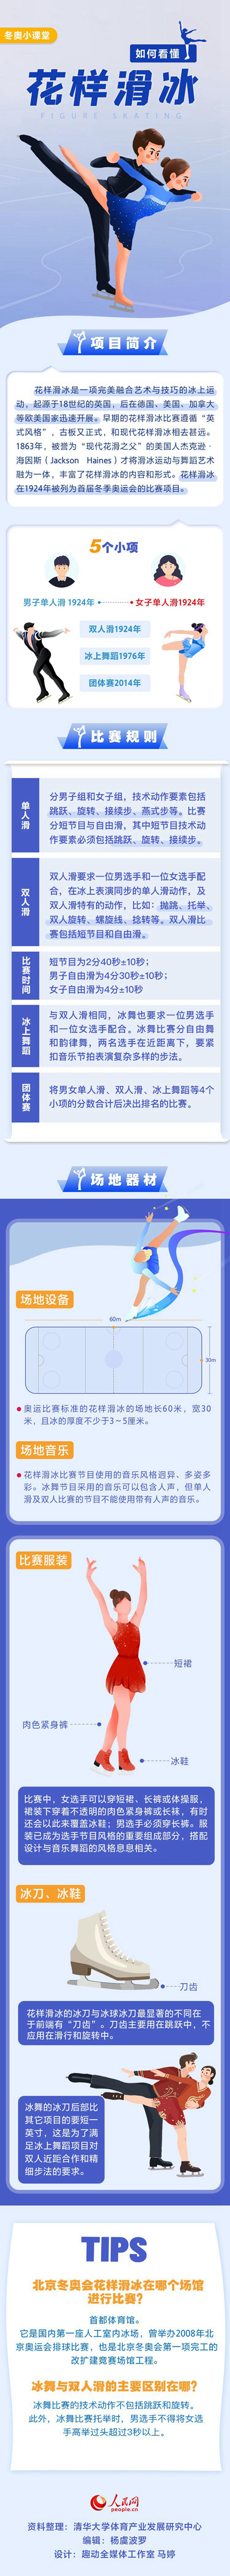 如何看懂花样滑冰